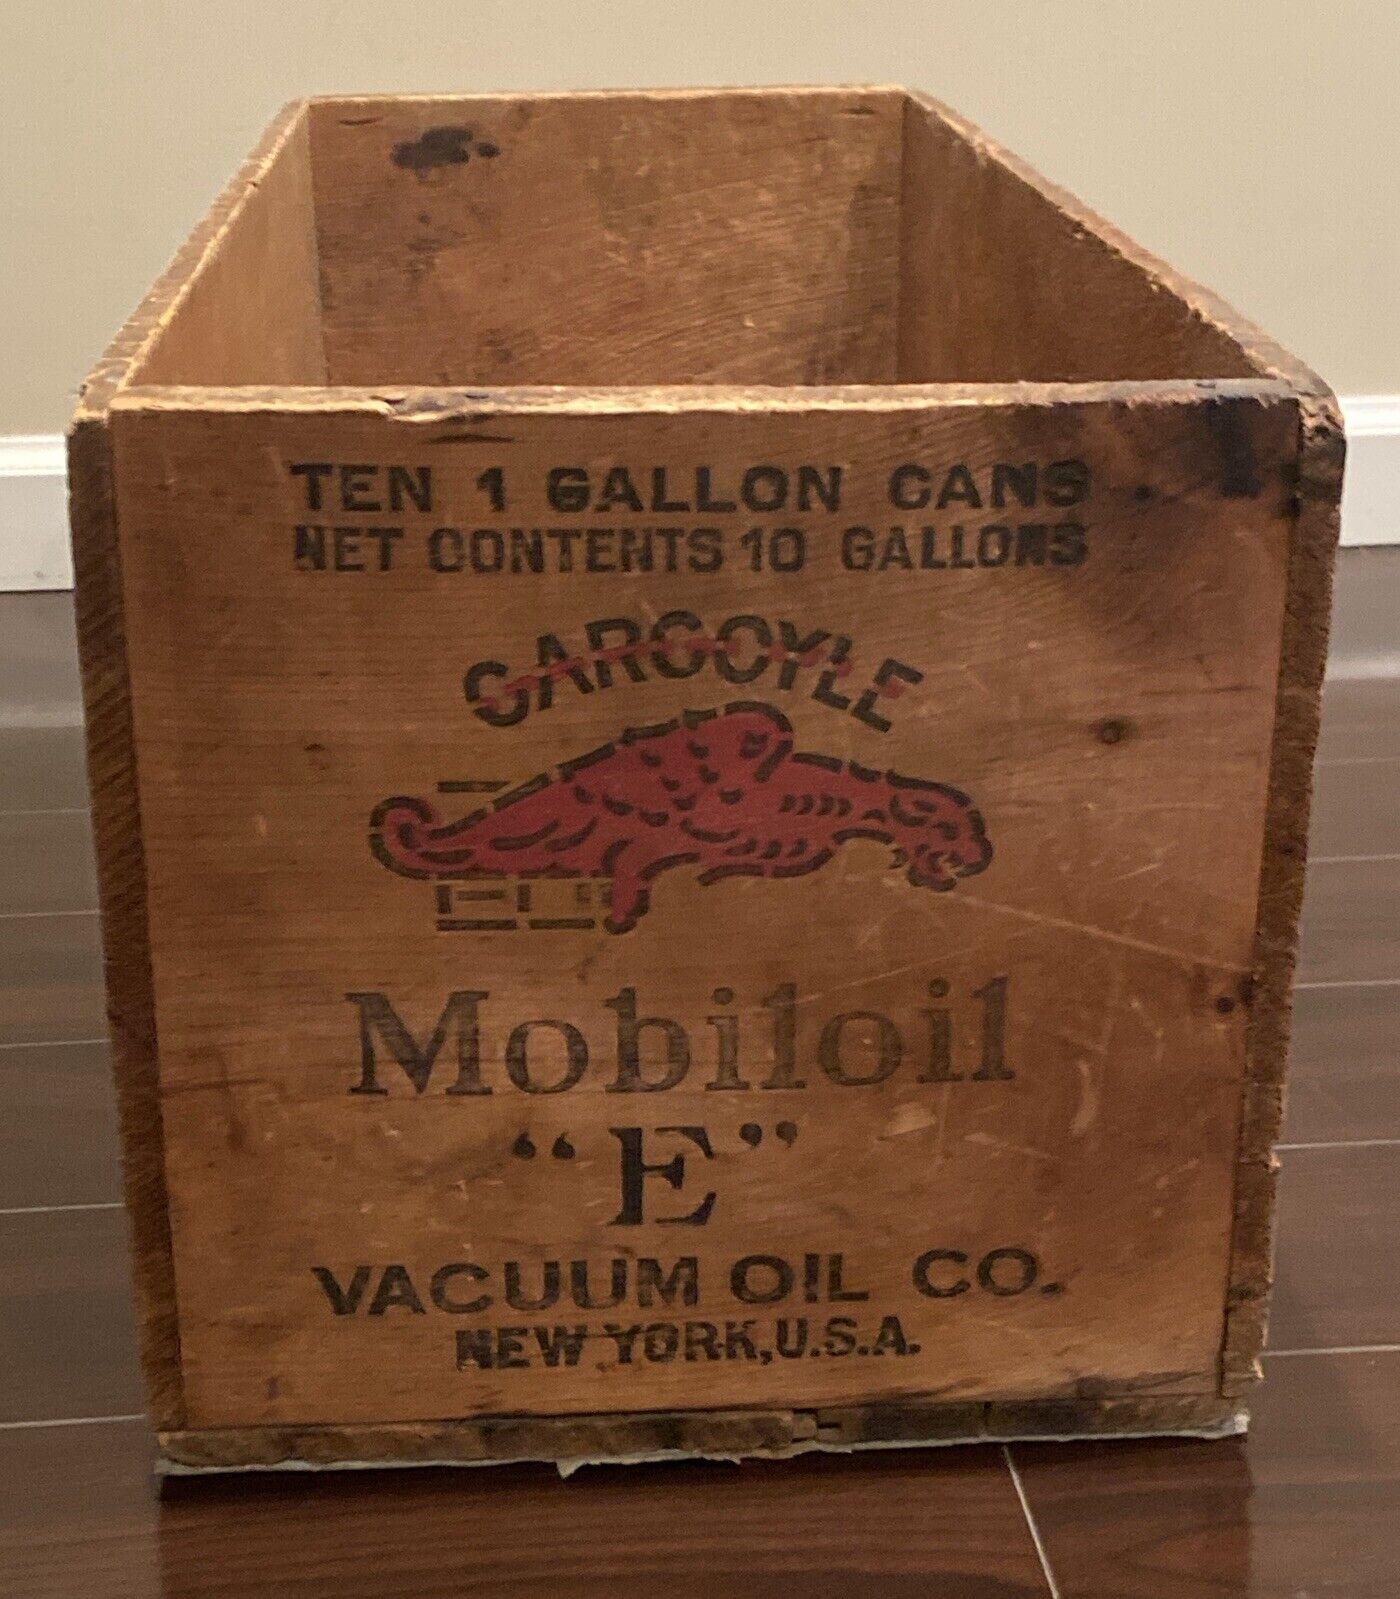 Mobiloil Gargoyle “E” Motor Oil Ten 1 Gallon Cans Wood Crate Box 28” Long 1930’s